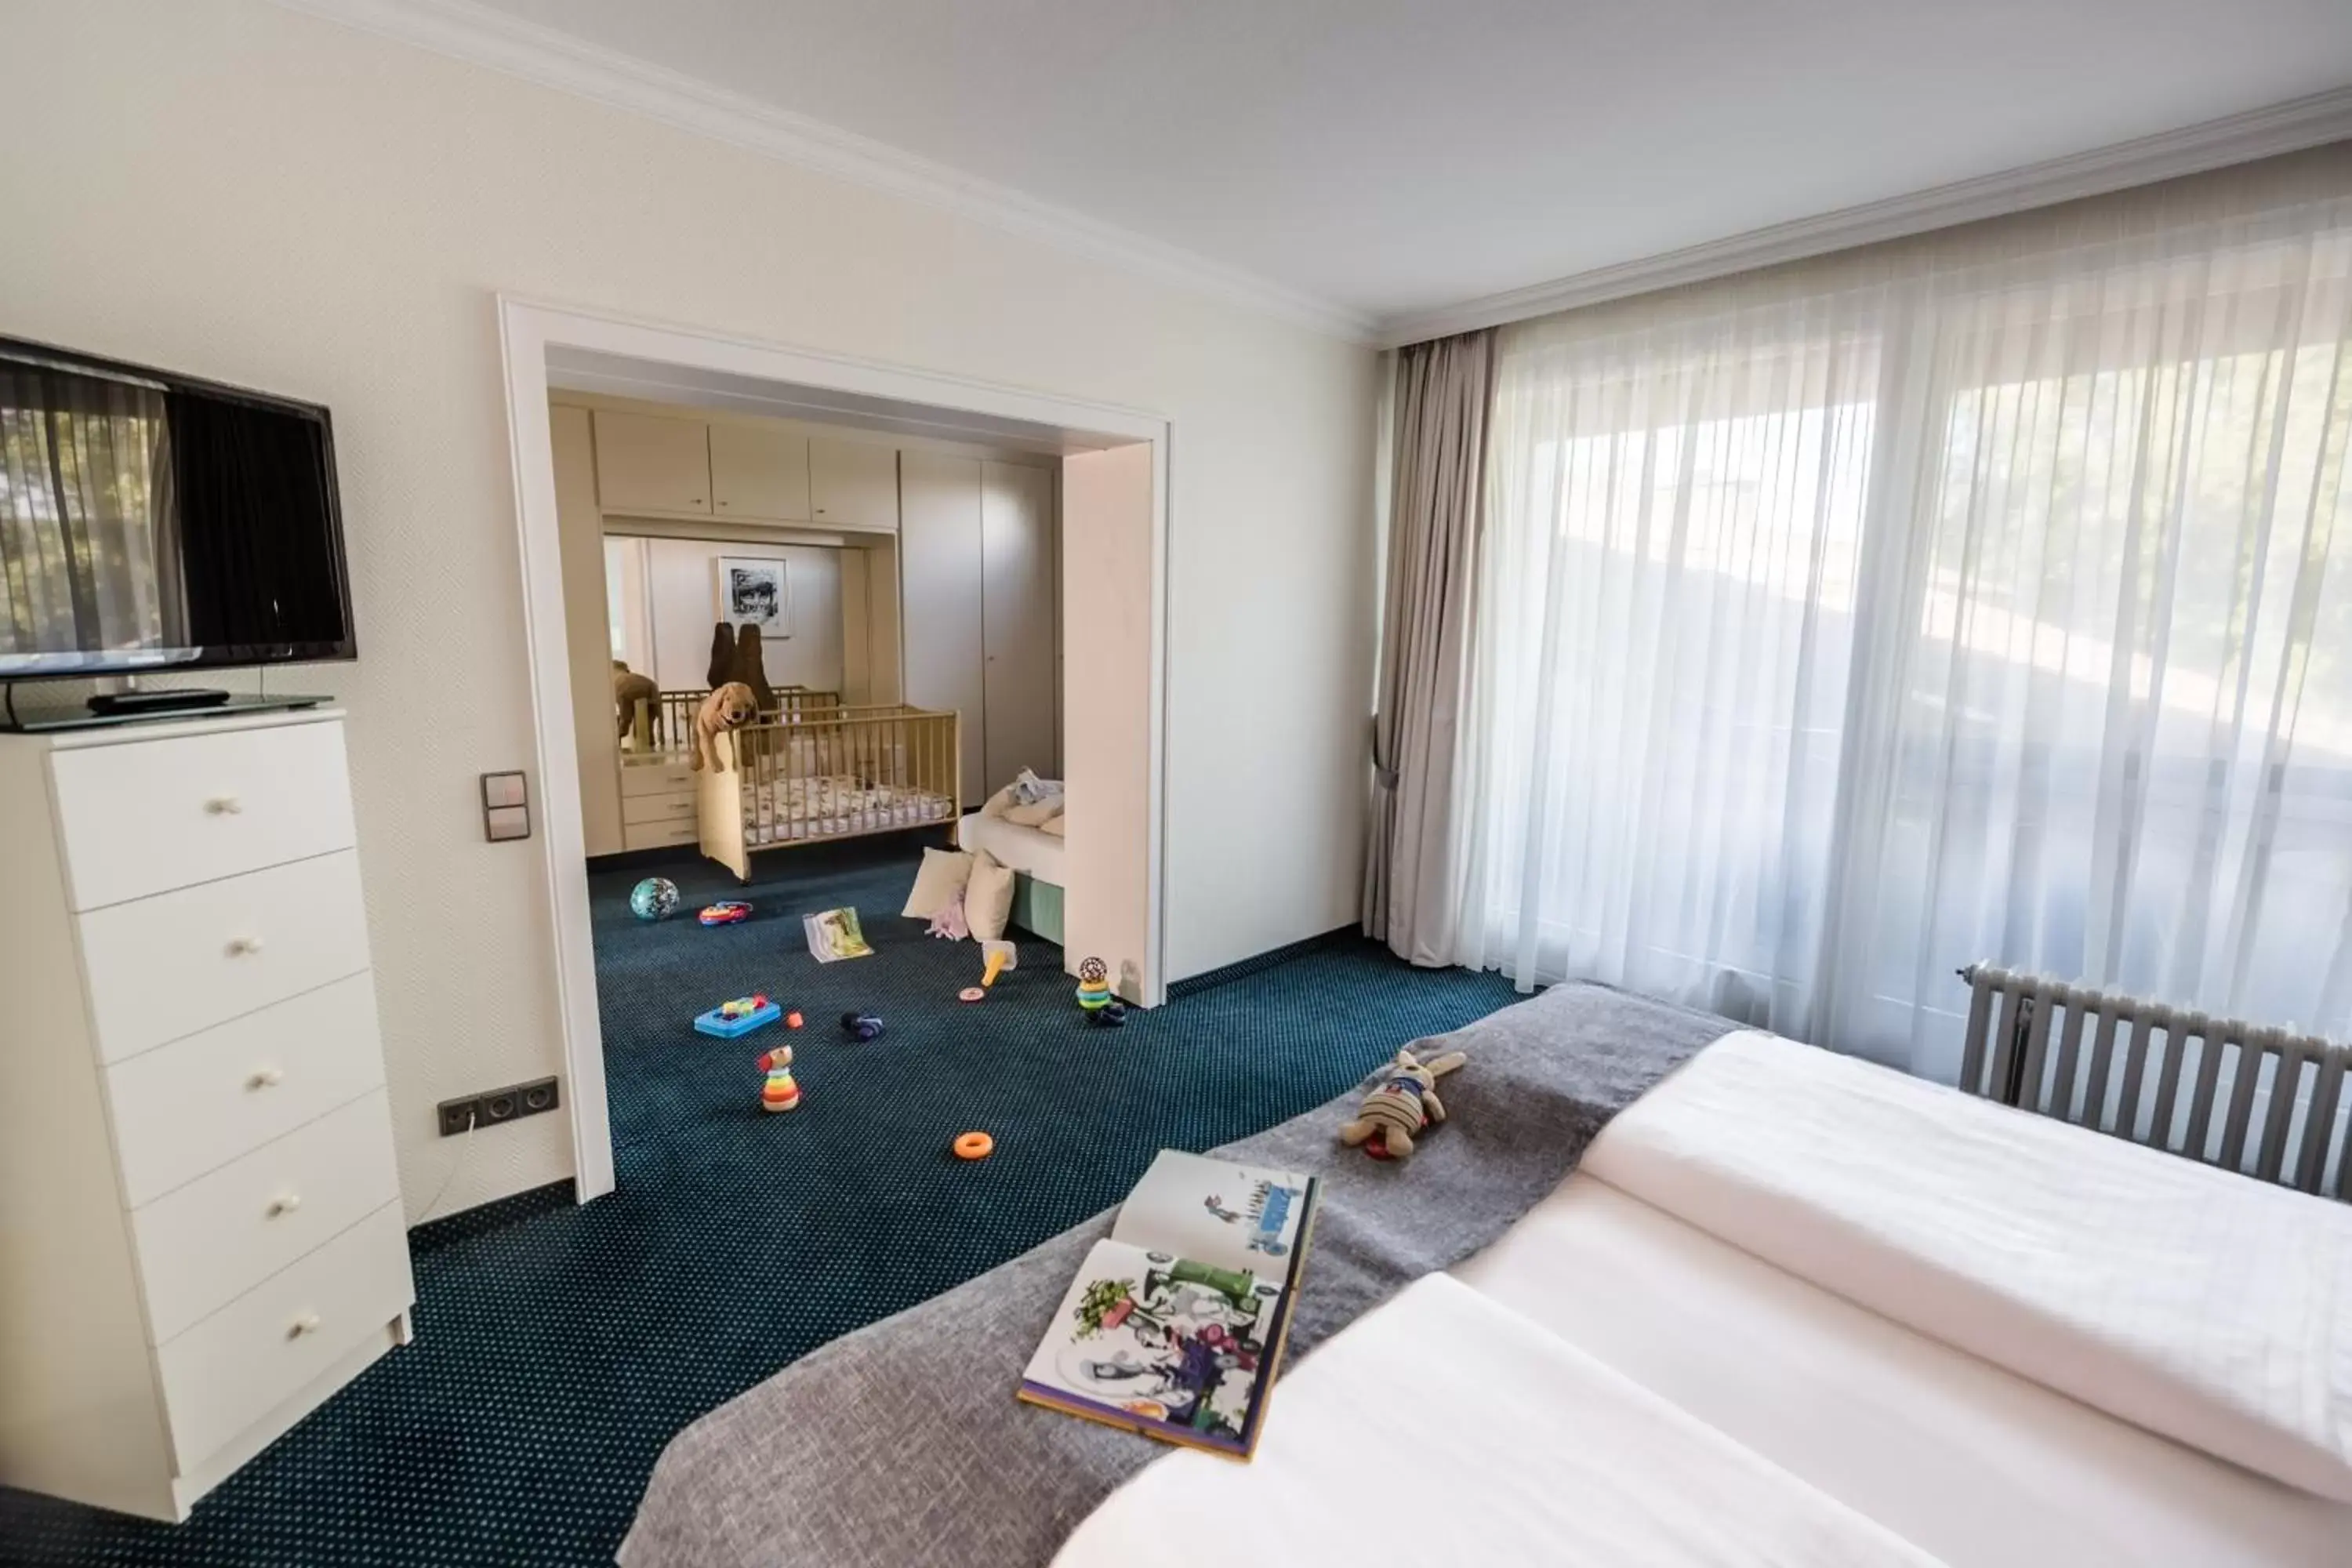 Family, Bed in Best Western Premier Seehotel Krautkrämer